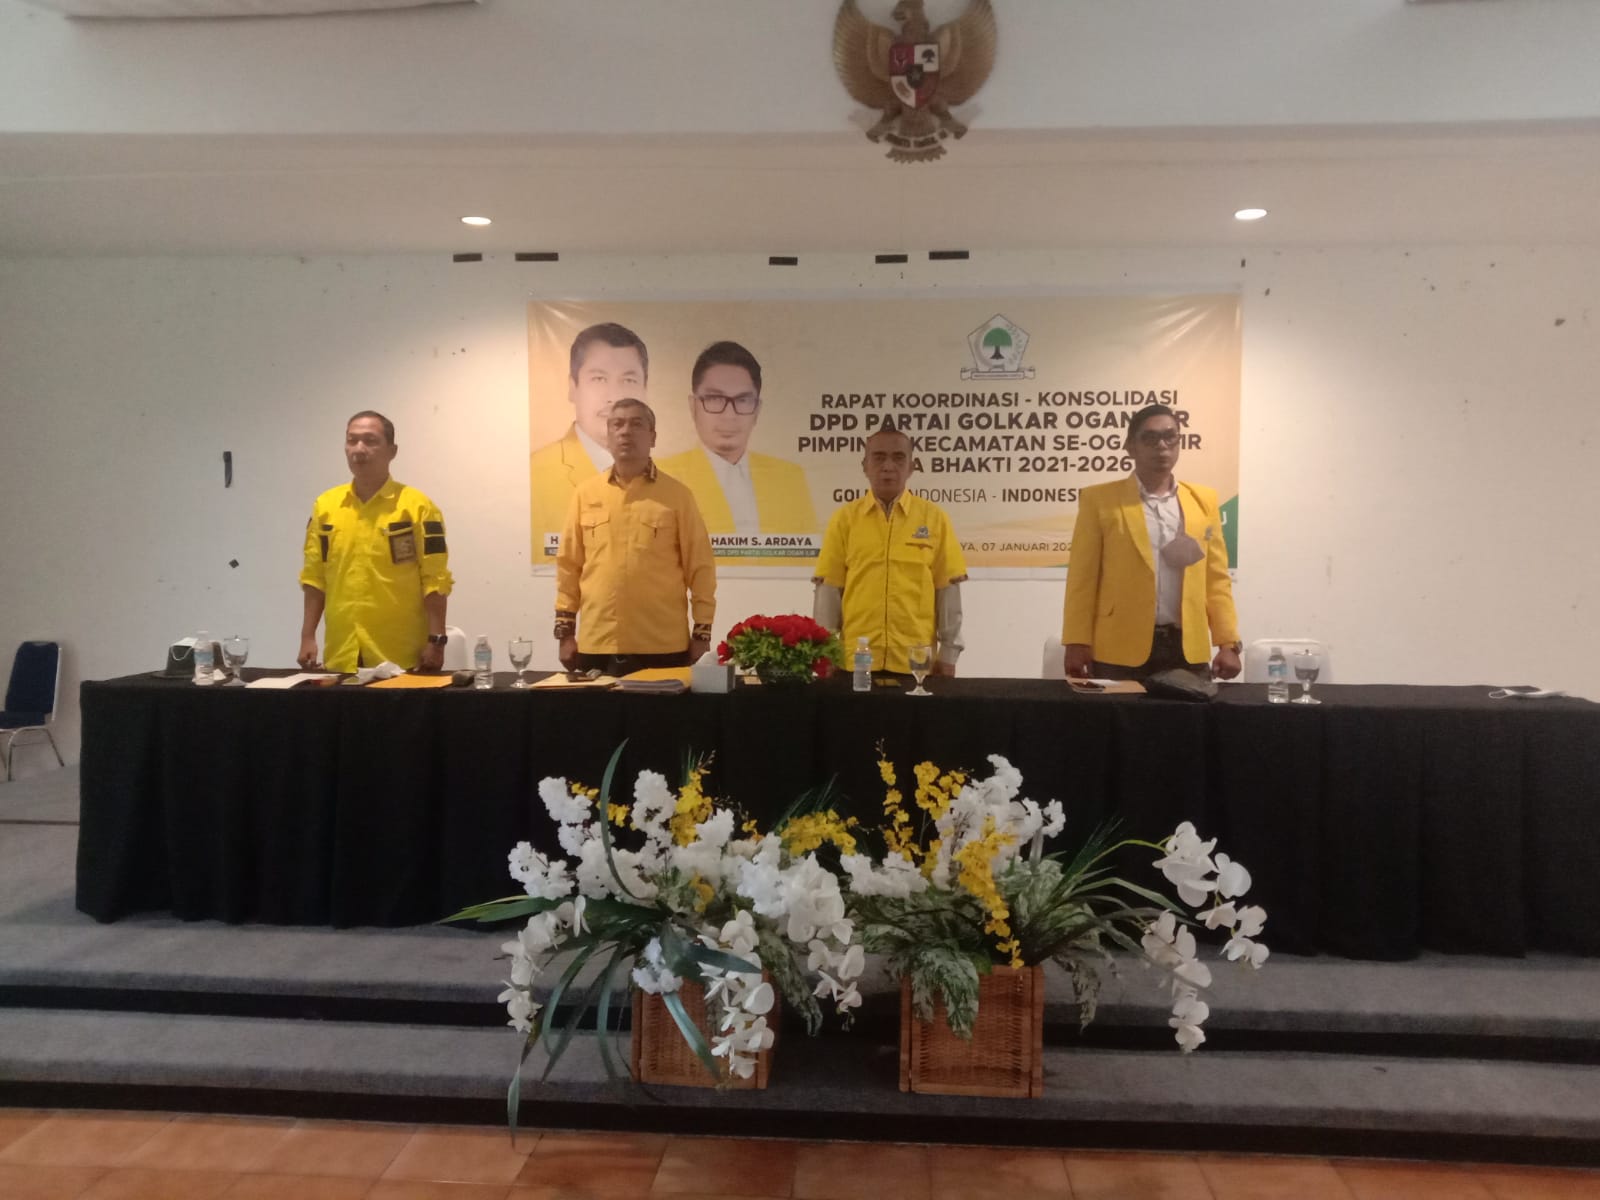 DPD Partai Golkar OI Gelar Rapat Koordinasi dan Konsolidasi 16 Kecamatan